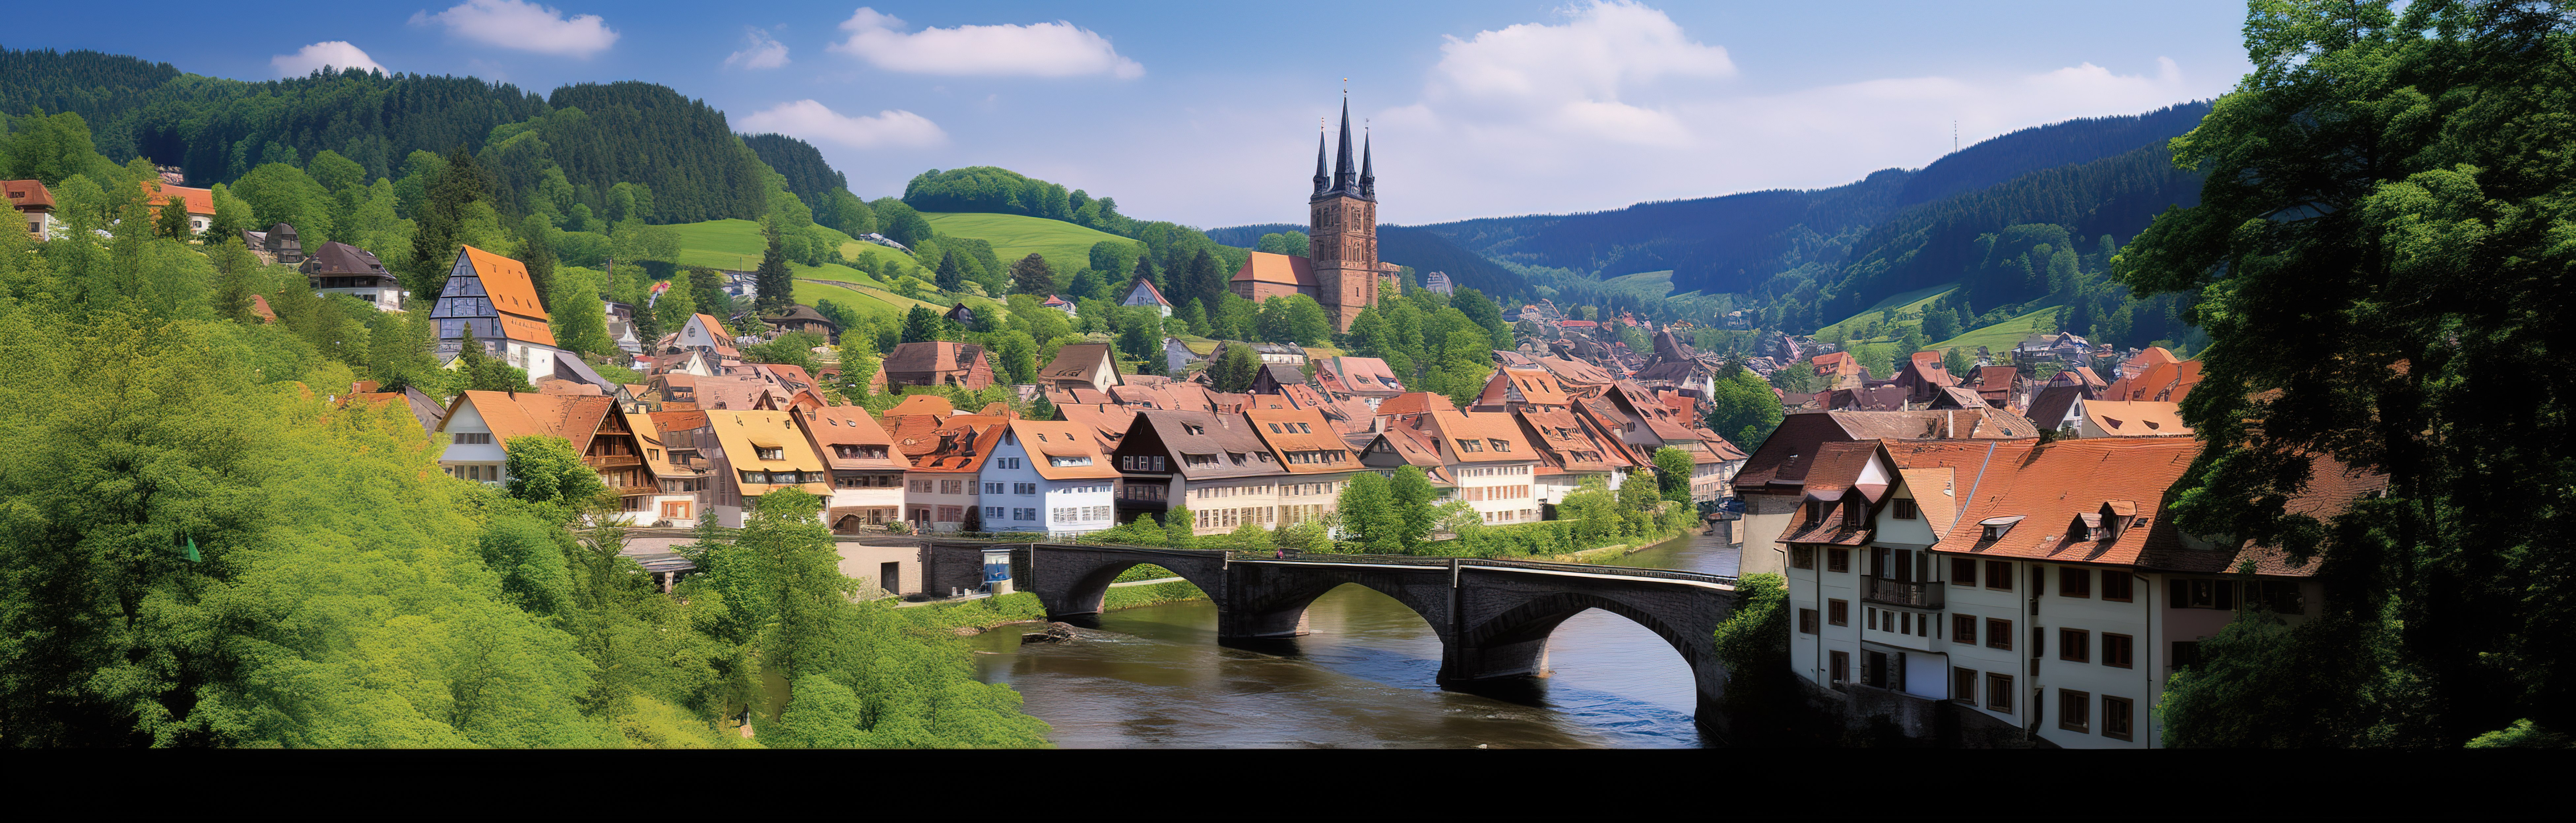 一个小镇位于德国河谷图片